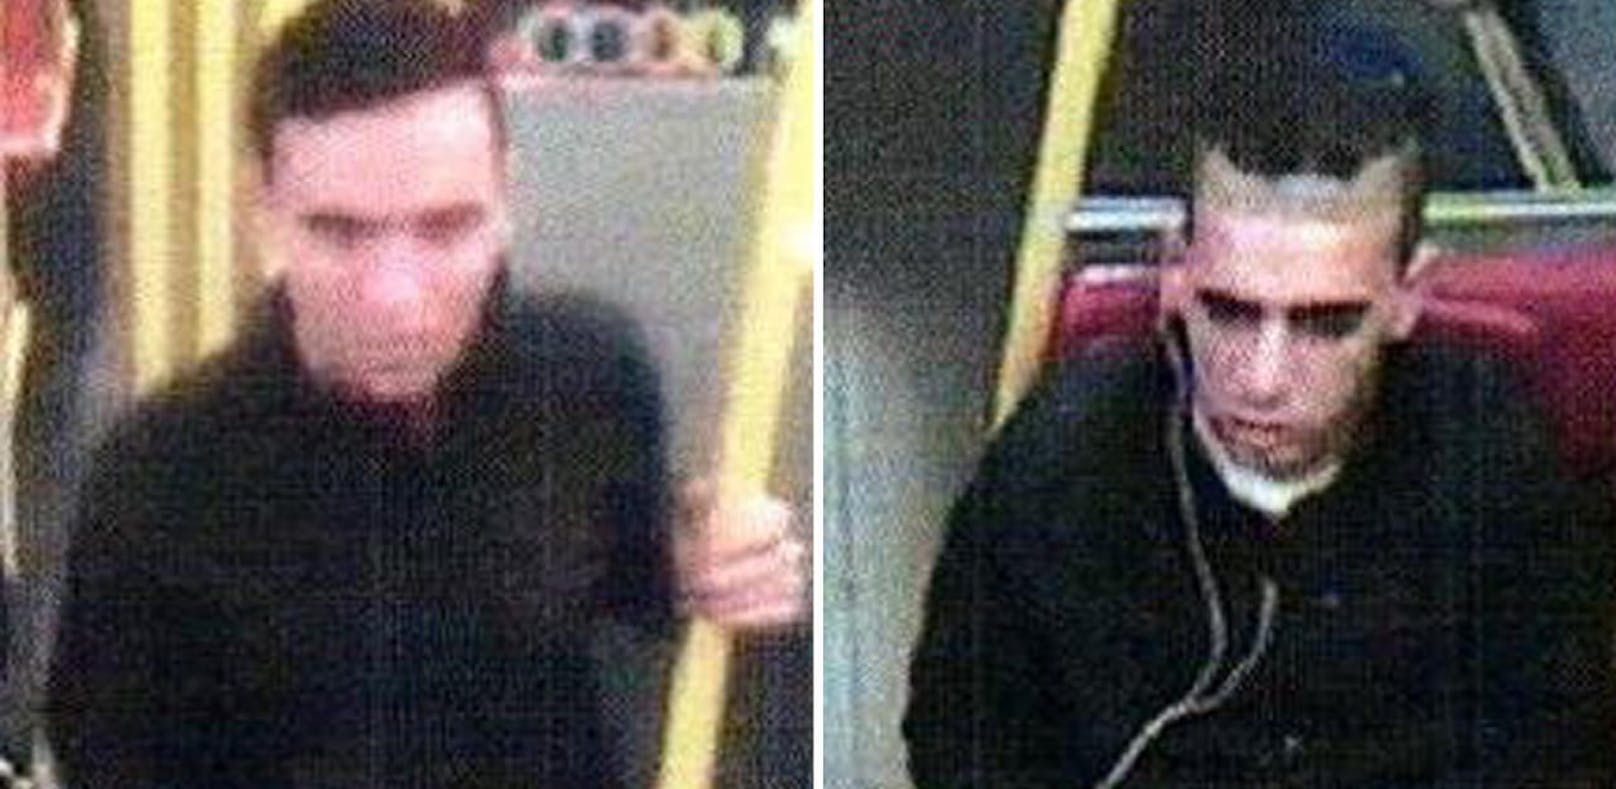 Diese beiden Männer sollen am 21. Oktober 2017 einen 22-Jährigen in der Wiener U-Bahn überfallen haben.